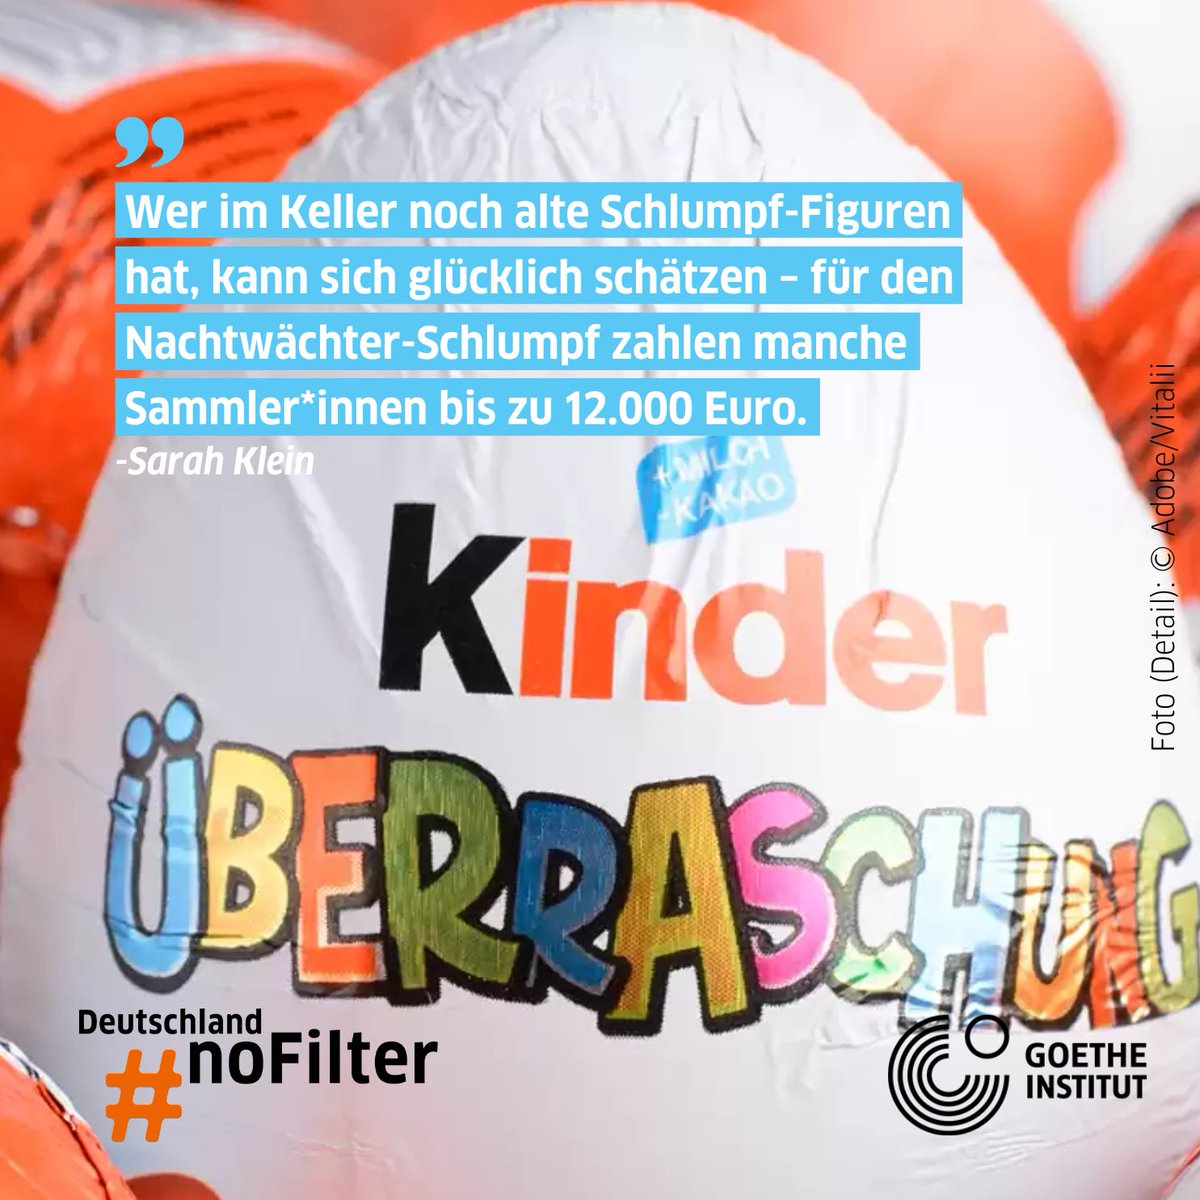 【キンダーサプライズ】🥚
1974年以来、スーパーマーケット、ガソリンスタンド、キオスクでは欠かせないお菓子の サプライズエッグ。玩具が詰まったこのチョコたまごは「Ü-Ei」とも呼ばれ、世界中の人々に親しまれています。👇
goethe.de/prj/ger/de/ihr…
#deutschlandnofilter